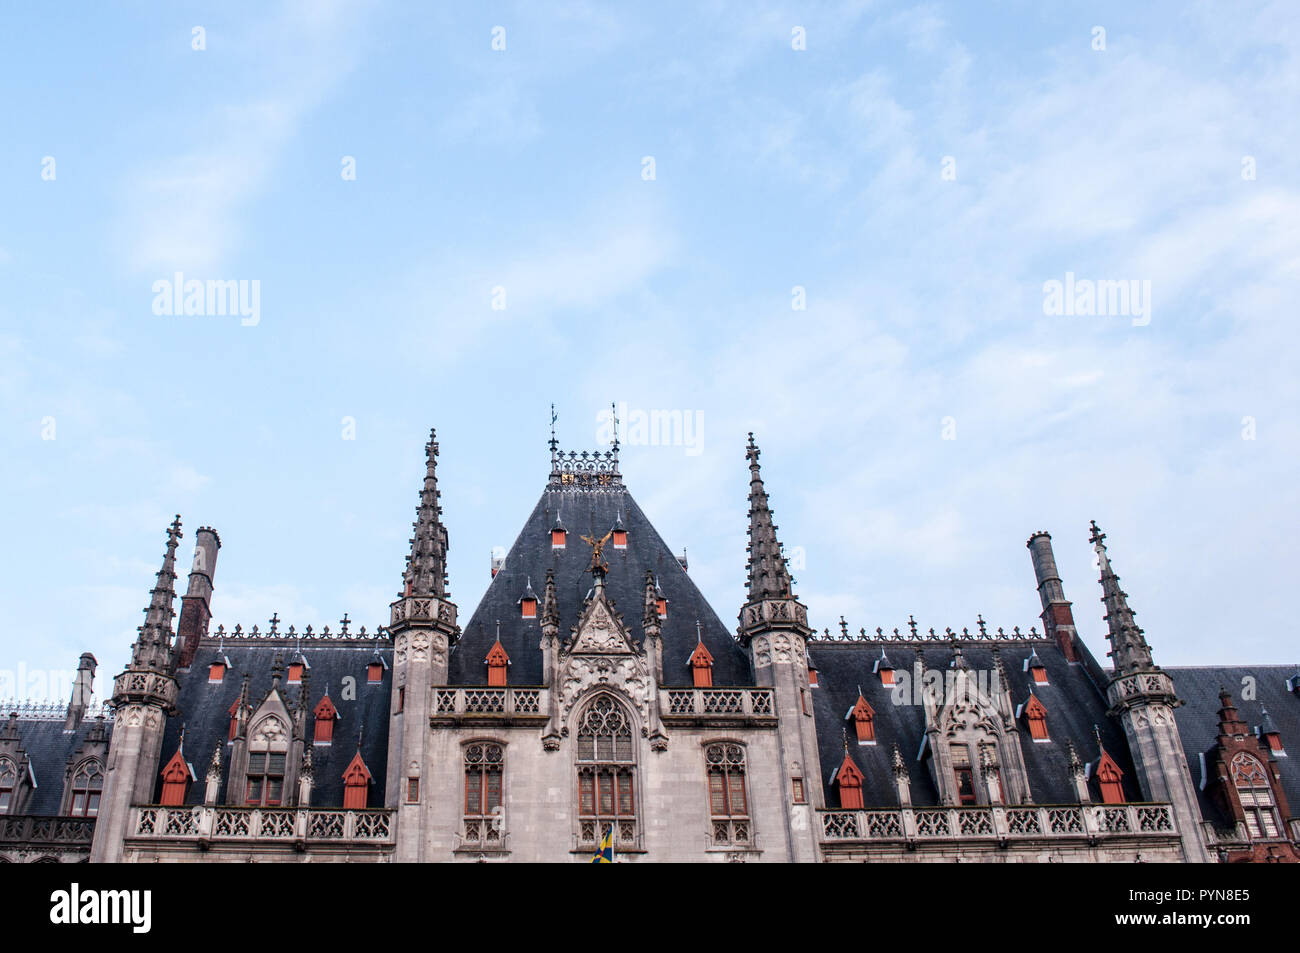 L'édifice de la Cour provinciale flamande (Provinciaal Hof) avec fenêtres rouges. Bruges, Belgique, Europe. Banque D'Images